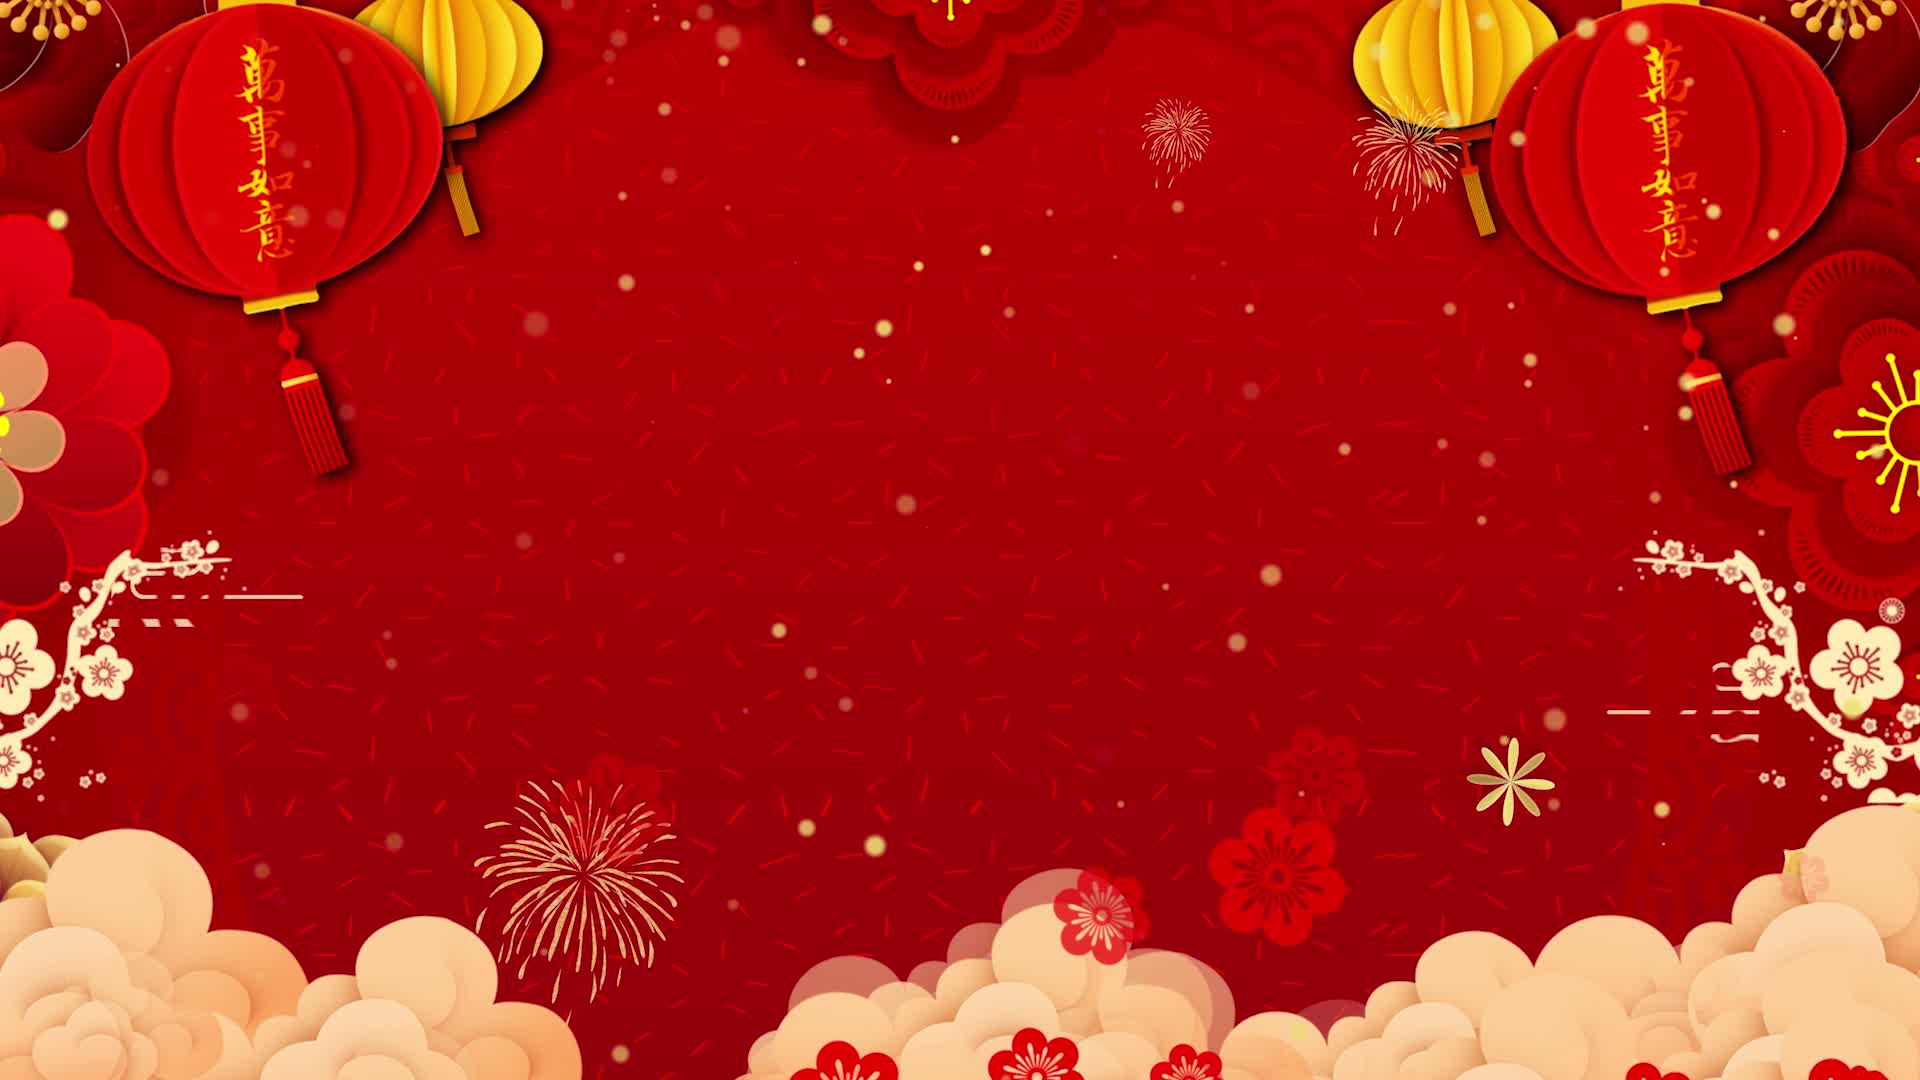 元旦晚会背景led大屏无文字可自行添加新年快乐年会主kv背景视频素材红色拜年背景素材